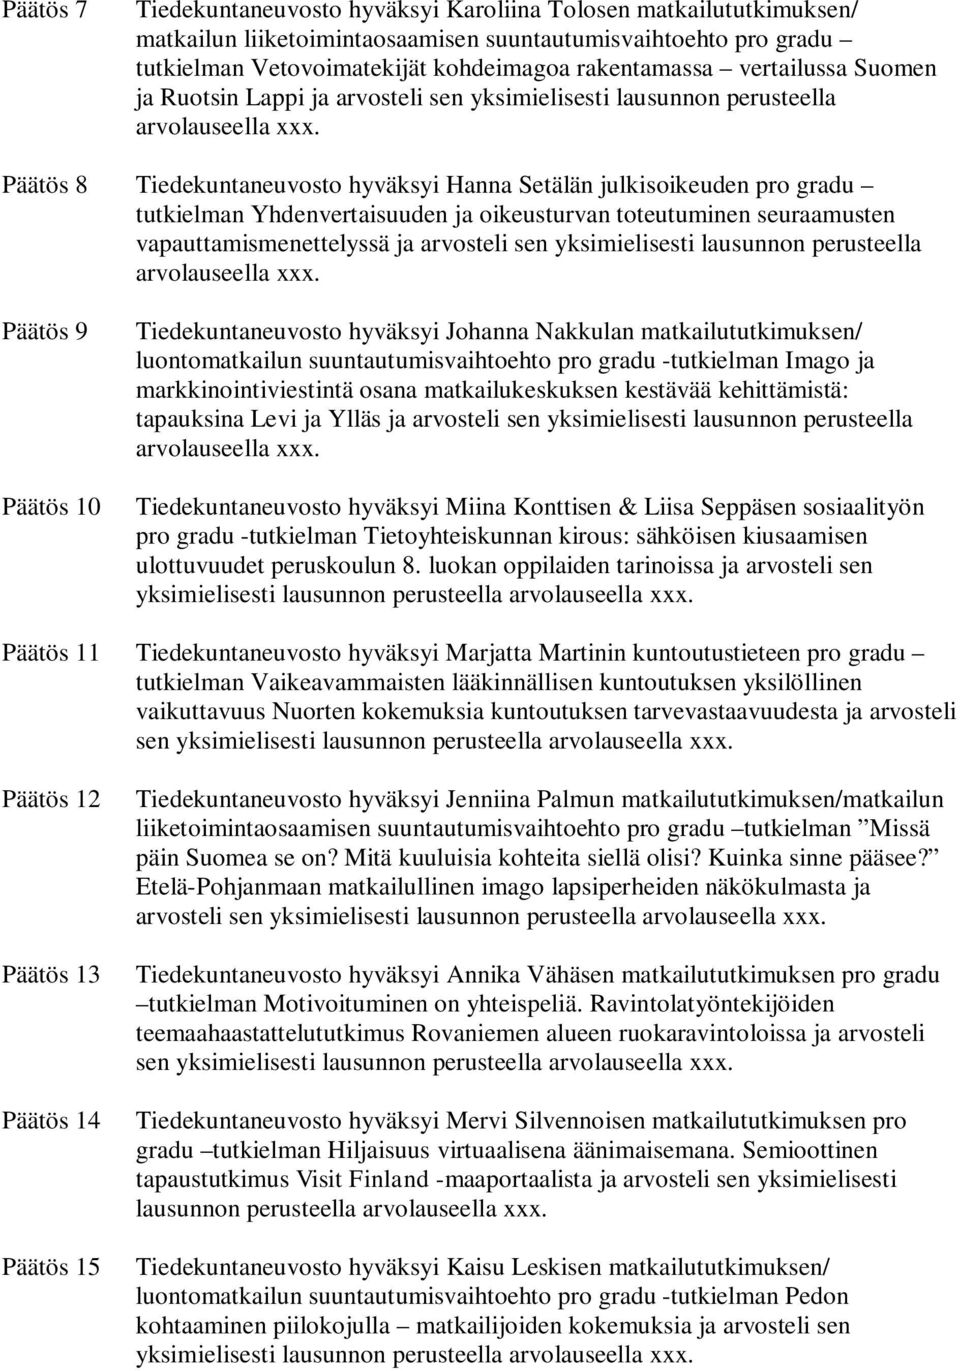 Päätös 8 Tiedekuntaneuvosto hyväksyi Hanna Setälän julkisoikeuden pro gradu tutkielman Yhdenvertaisuuden ja oikeusturvan toteutuminen seuraamusten vapauttamismenettelyssä ja arvosteli sen